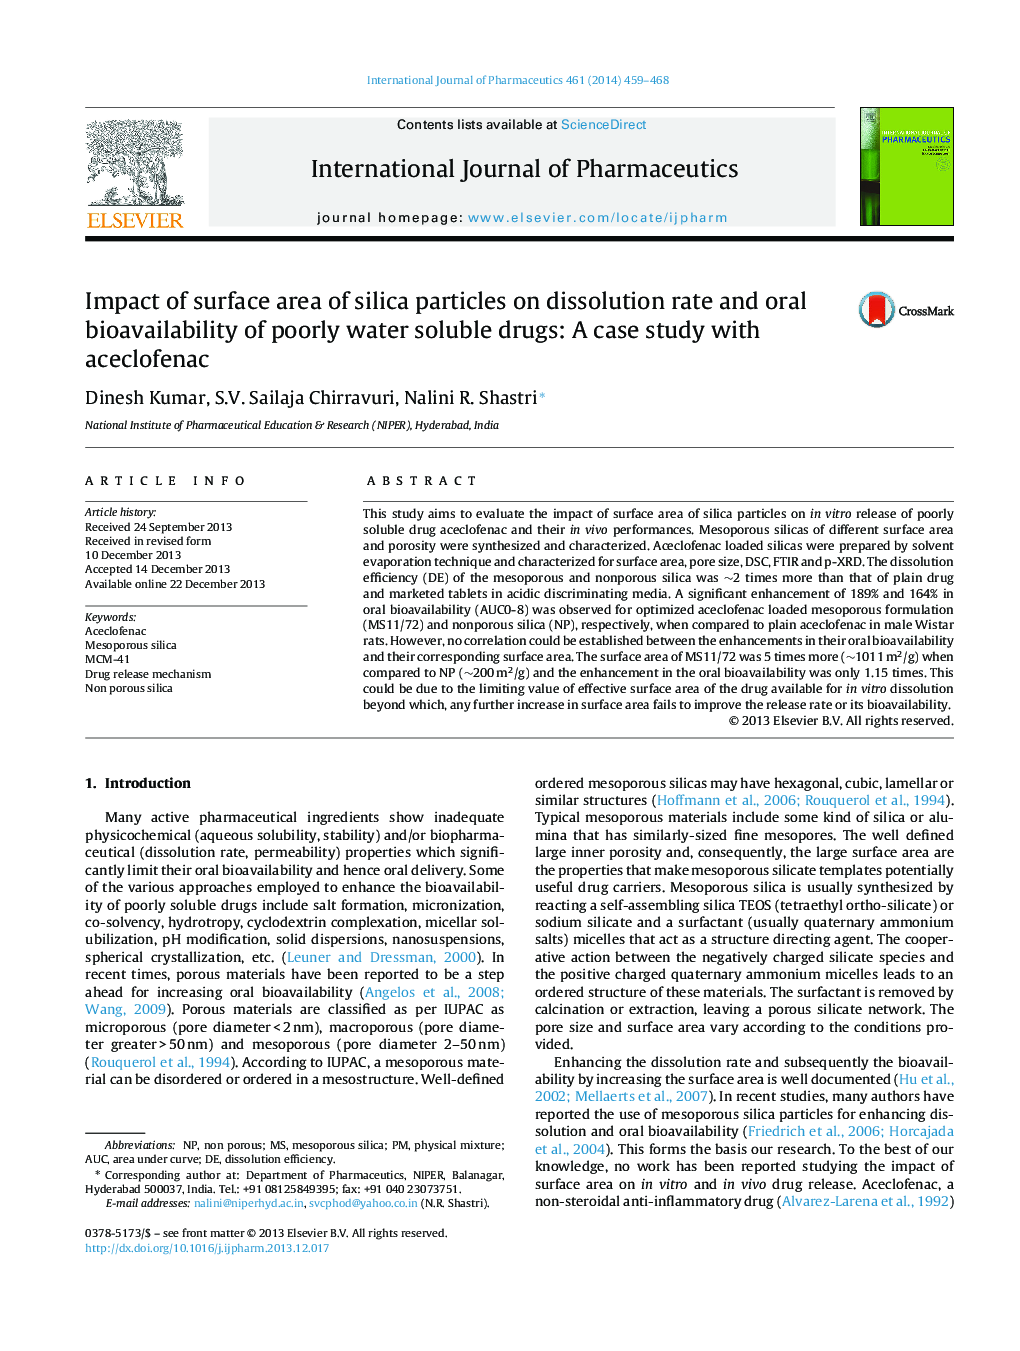 تاثیر سطح ذرات سیلیس در میزان انحلال و قابلیت زیستی خوراکی داروهای محلول در آب: مطالعه موردی با آکلوفناک 